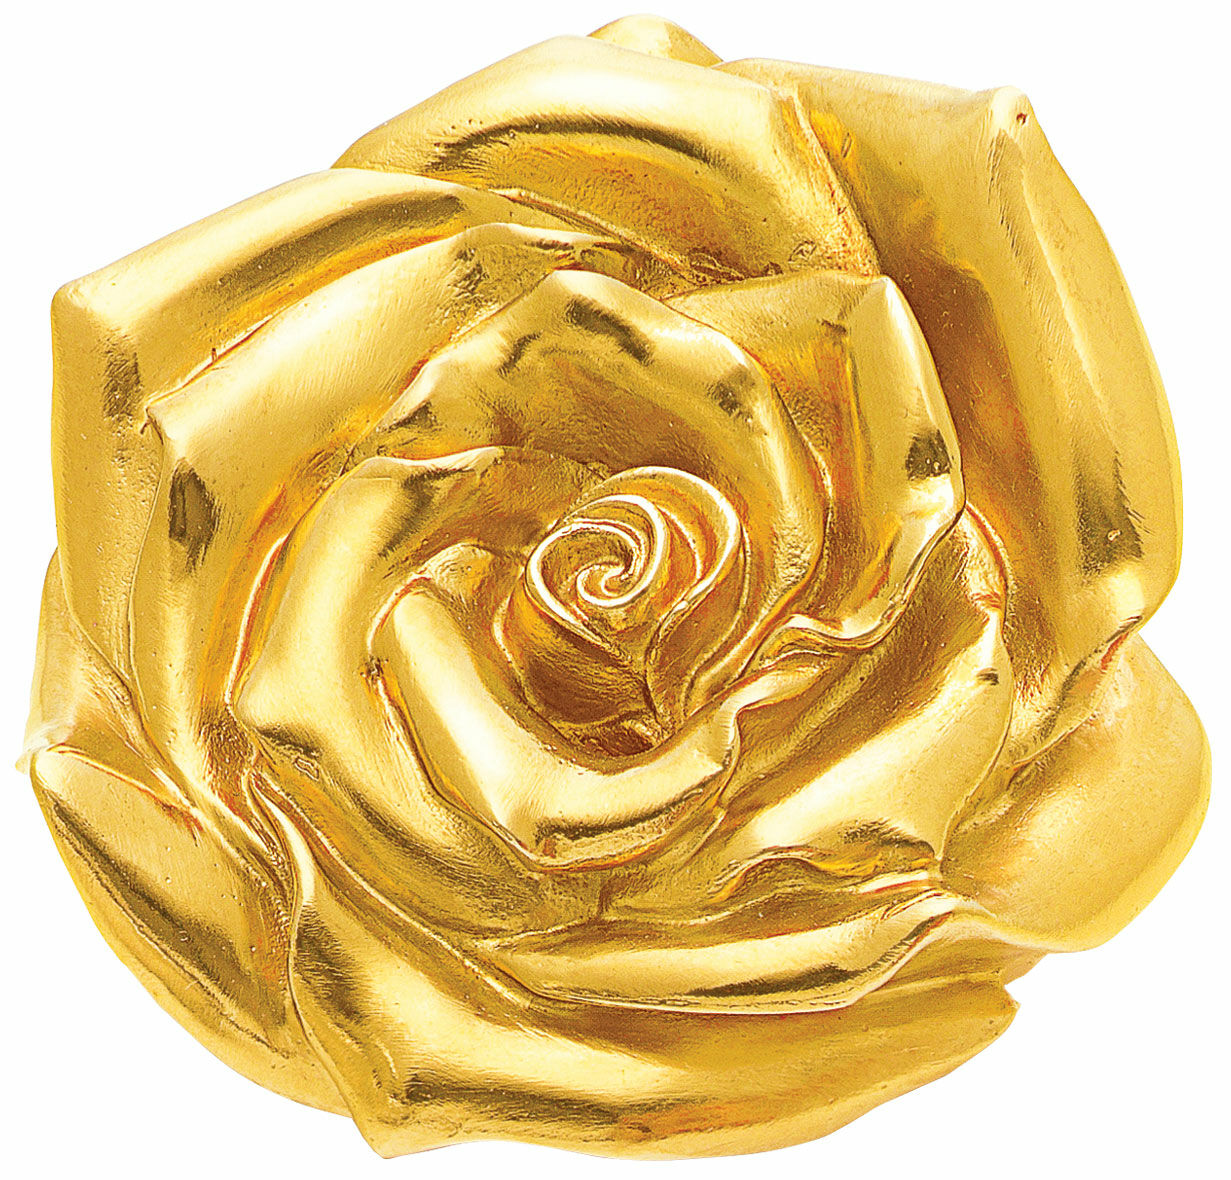 Skulptur "Rose" (2012), gul guldbelagt version von Ottmar Hörl